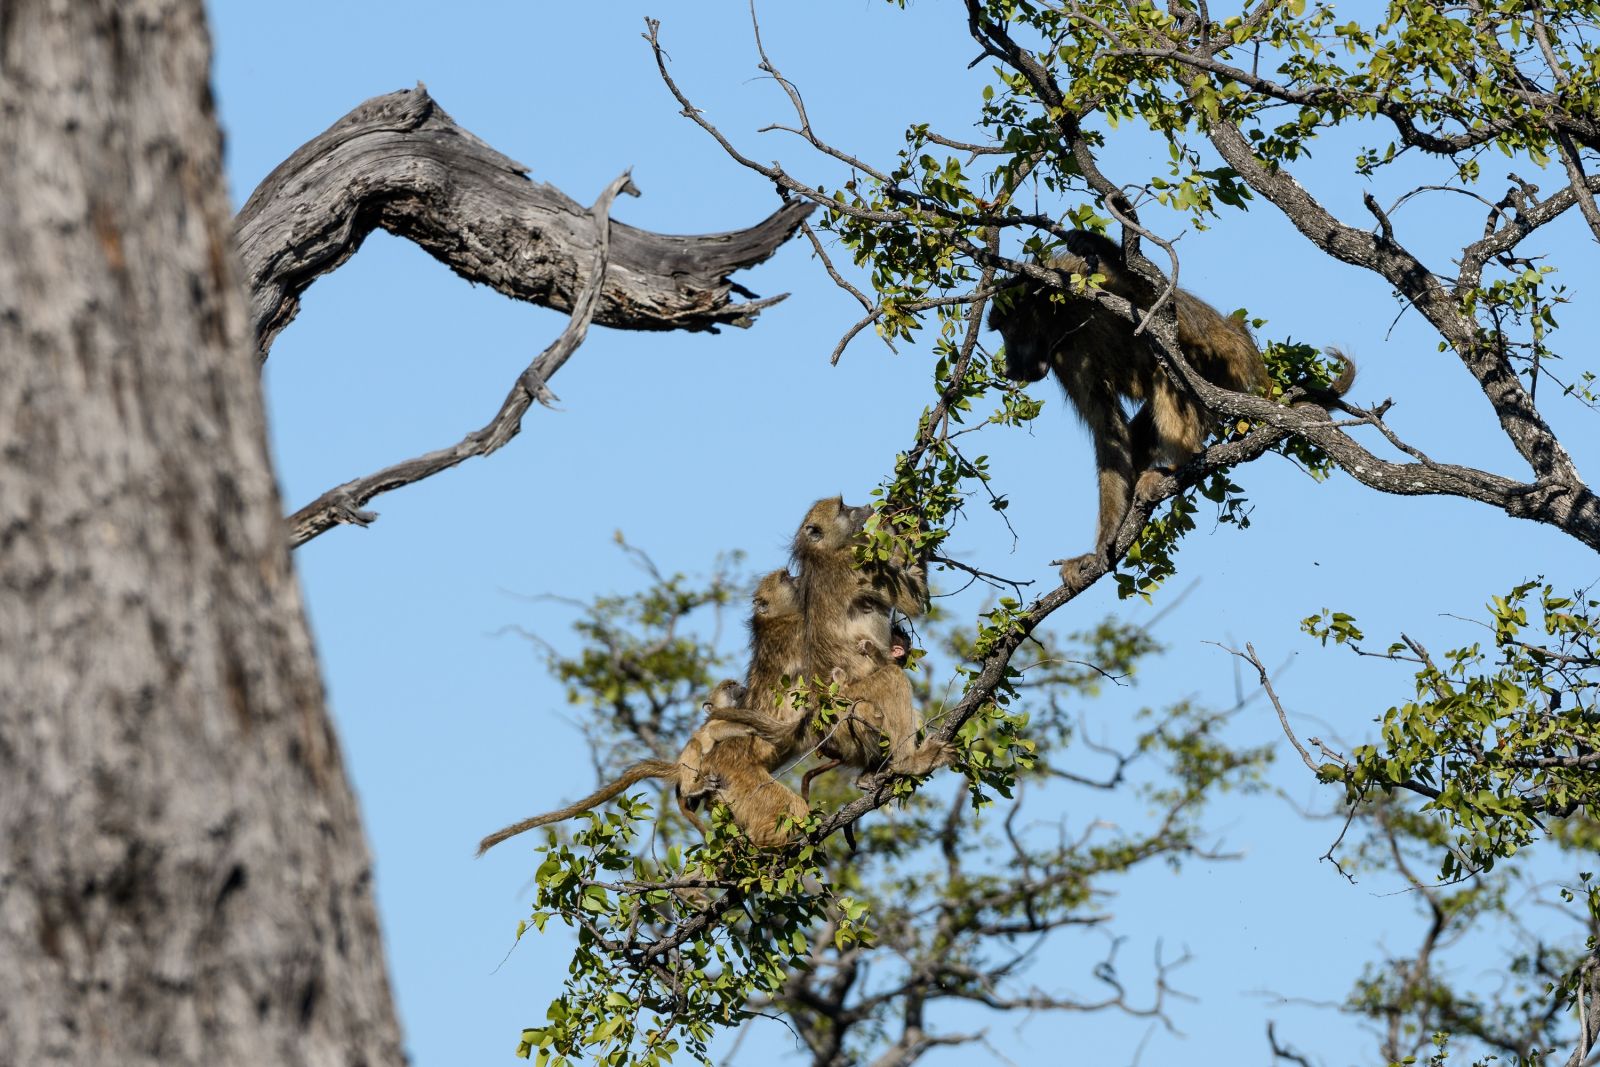 Aggressivität unter Pavianen: Ein wütendes Männchen (rechts) versucht, Weibchen mit Jungtieren von einem Baum zu vertreiben. Moremi Game Reserve, Okavango-Delta, Botswana